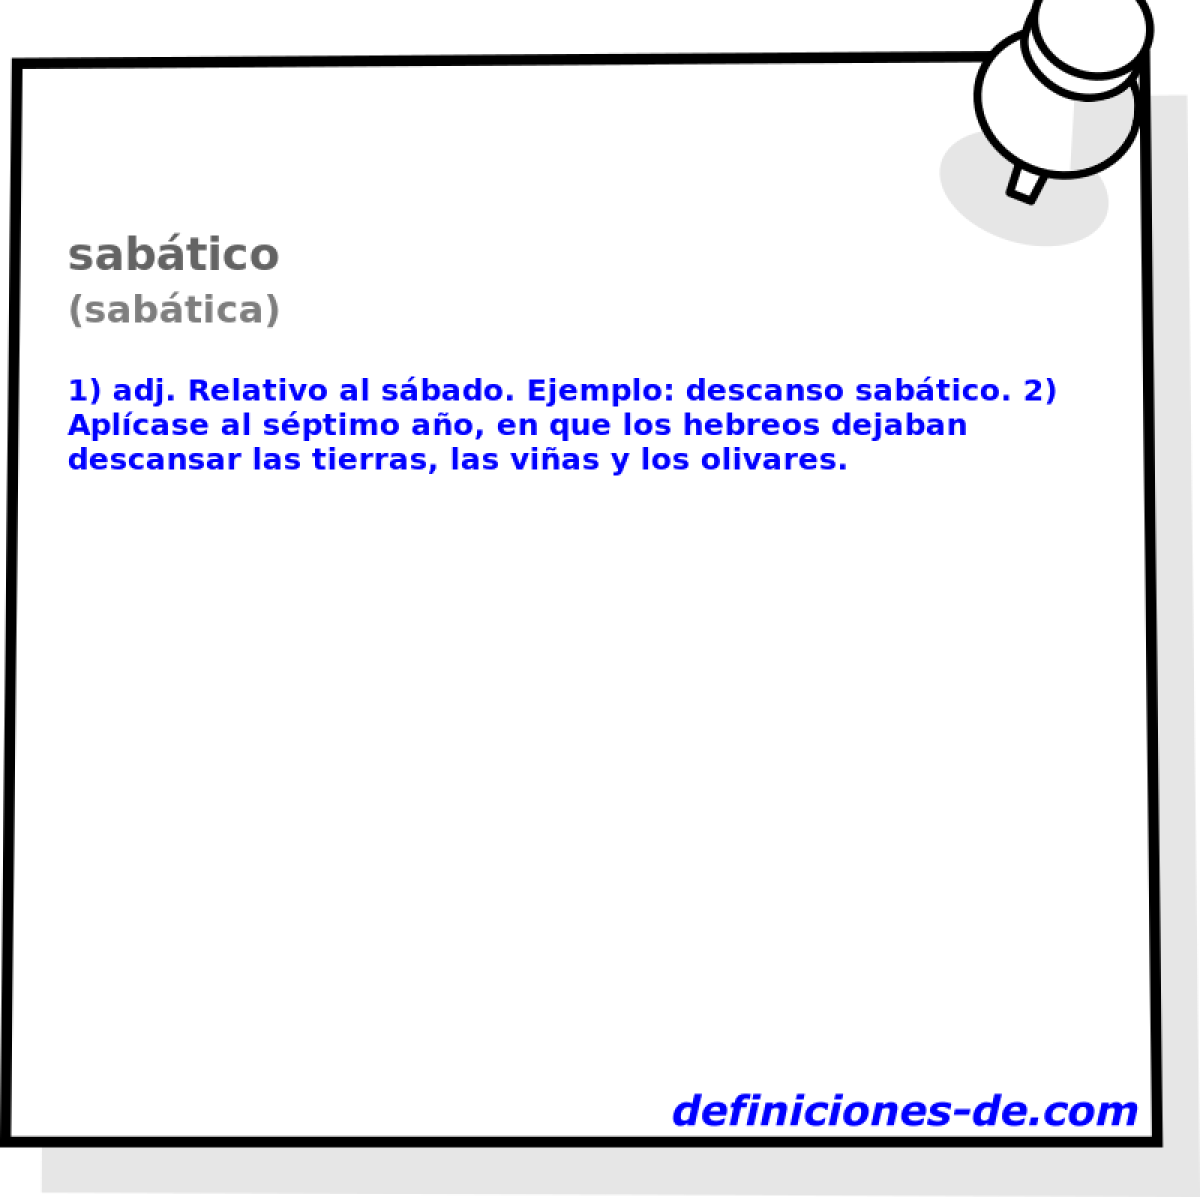 sabtico (sabtica)